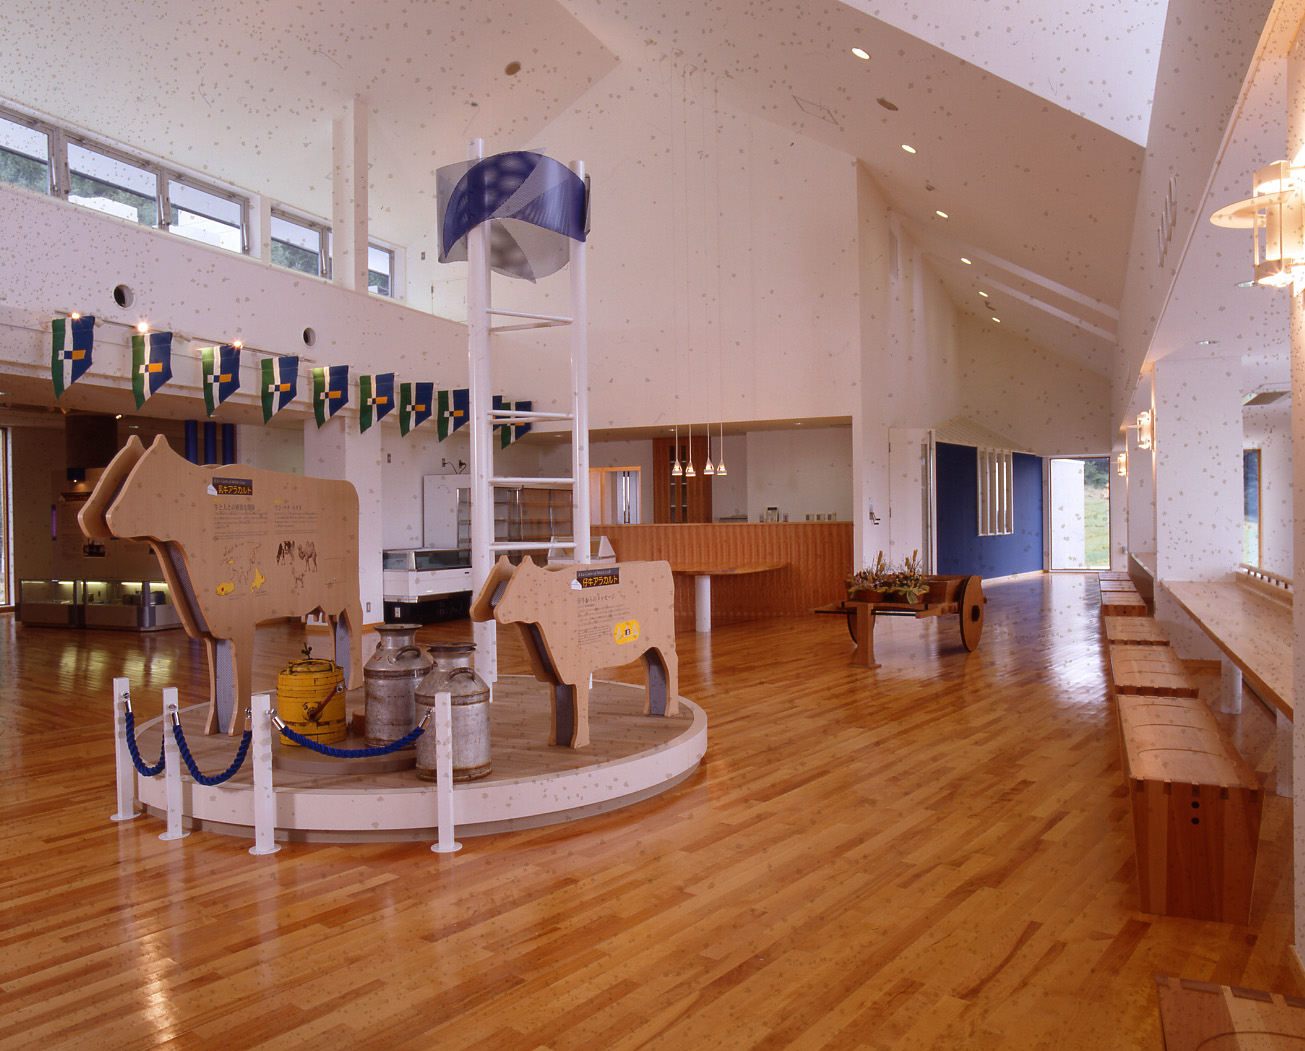 吹き抜けの高い天井の広々とした展示室に設置されている、牛の形をした大小2つの立体パネルの写真